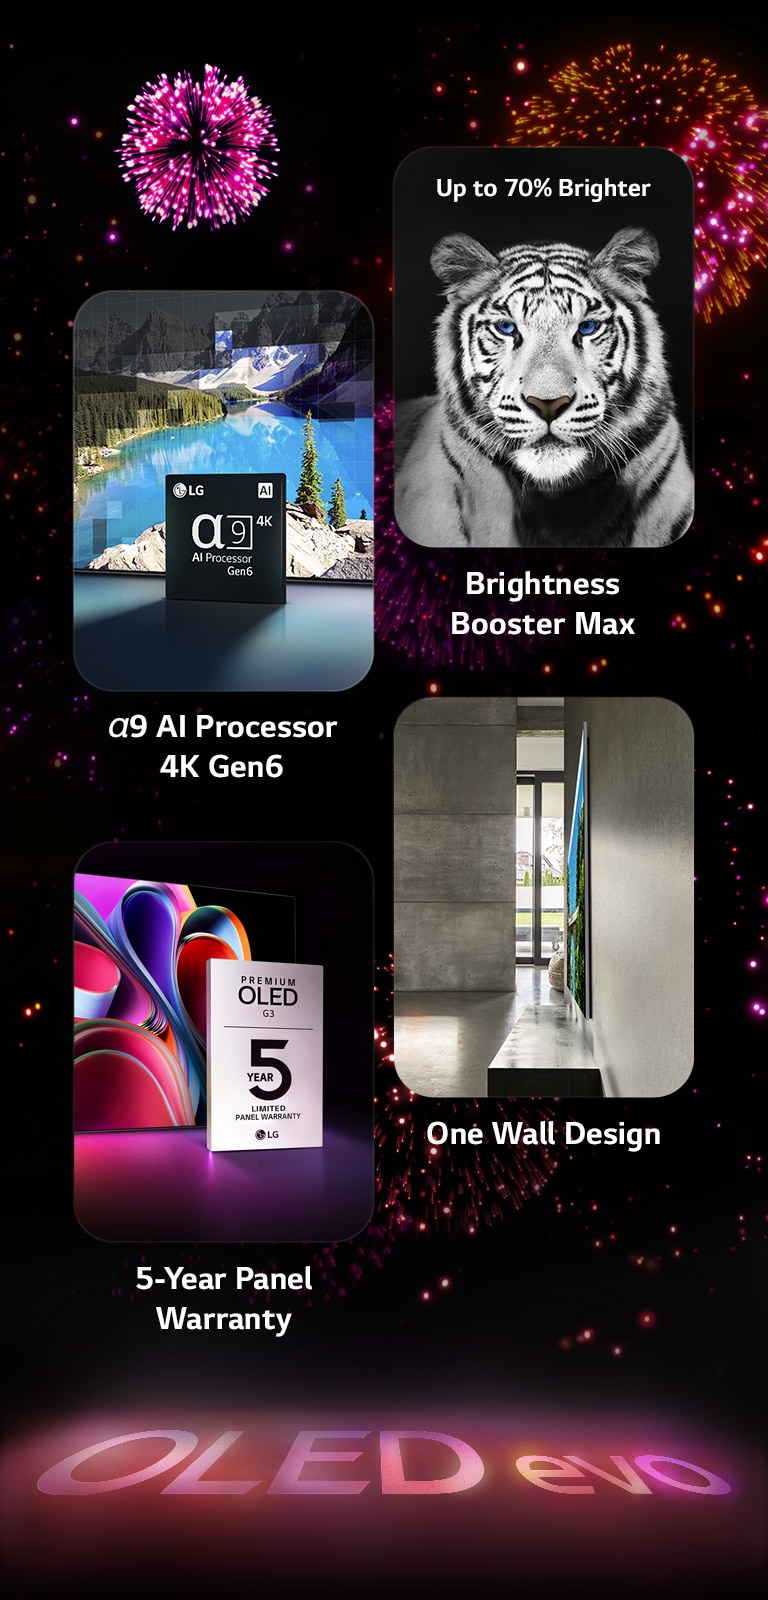 Obraz przedstawiający najważniejsze cechy telewizora LG OLED evo G3 na czarnym tle z różowo-fioletowym pokazem fajerwerków. Różowe odbicie pokazu fajerwerków na ziemi ukazuje słowa „OLED evo”. W obrazie znajduje się obraz przedstawiający procesor α9 AI 4K Gen6 stojący przed zdjęciem jeziora, które jest przetwarzane za pomocą technologii remasteringu. Obraz przedstawiający funkcję Brightness Booster Max pokazuje tygrysa z kontrastowymi jasnymi białymi pasami. Obraz przedstawiający 5-letnią gwarancję na panel ukazuje logo gwarancji Premium OLED G3 z ekranem w cieniu. Obraz przedstawiający One Wall Design ukazuje telewizor LG OLED evo G3 przylegający płasko do ściany w szarym industrialnym pomieszczeniu.